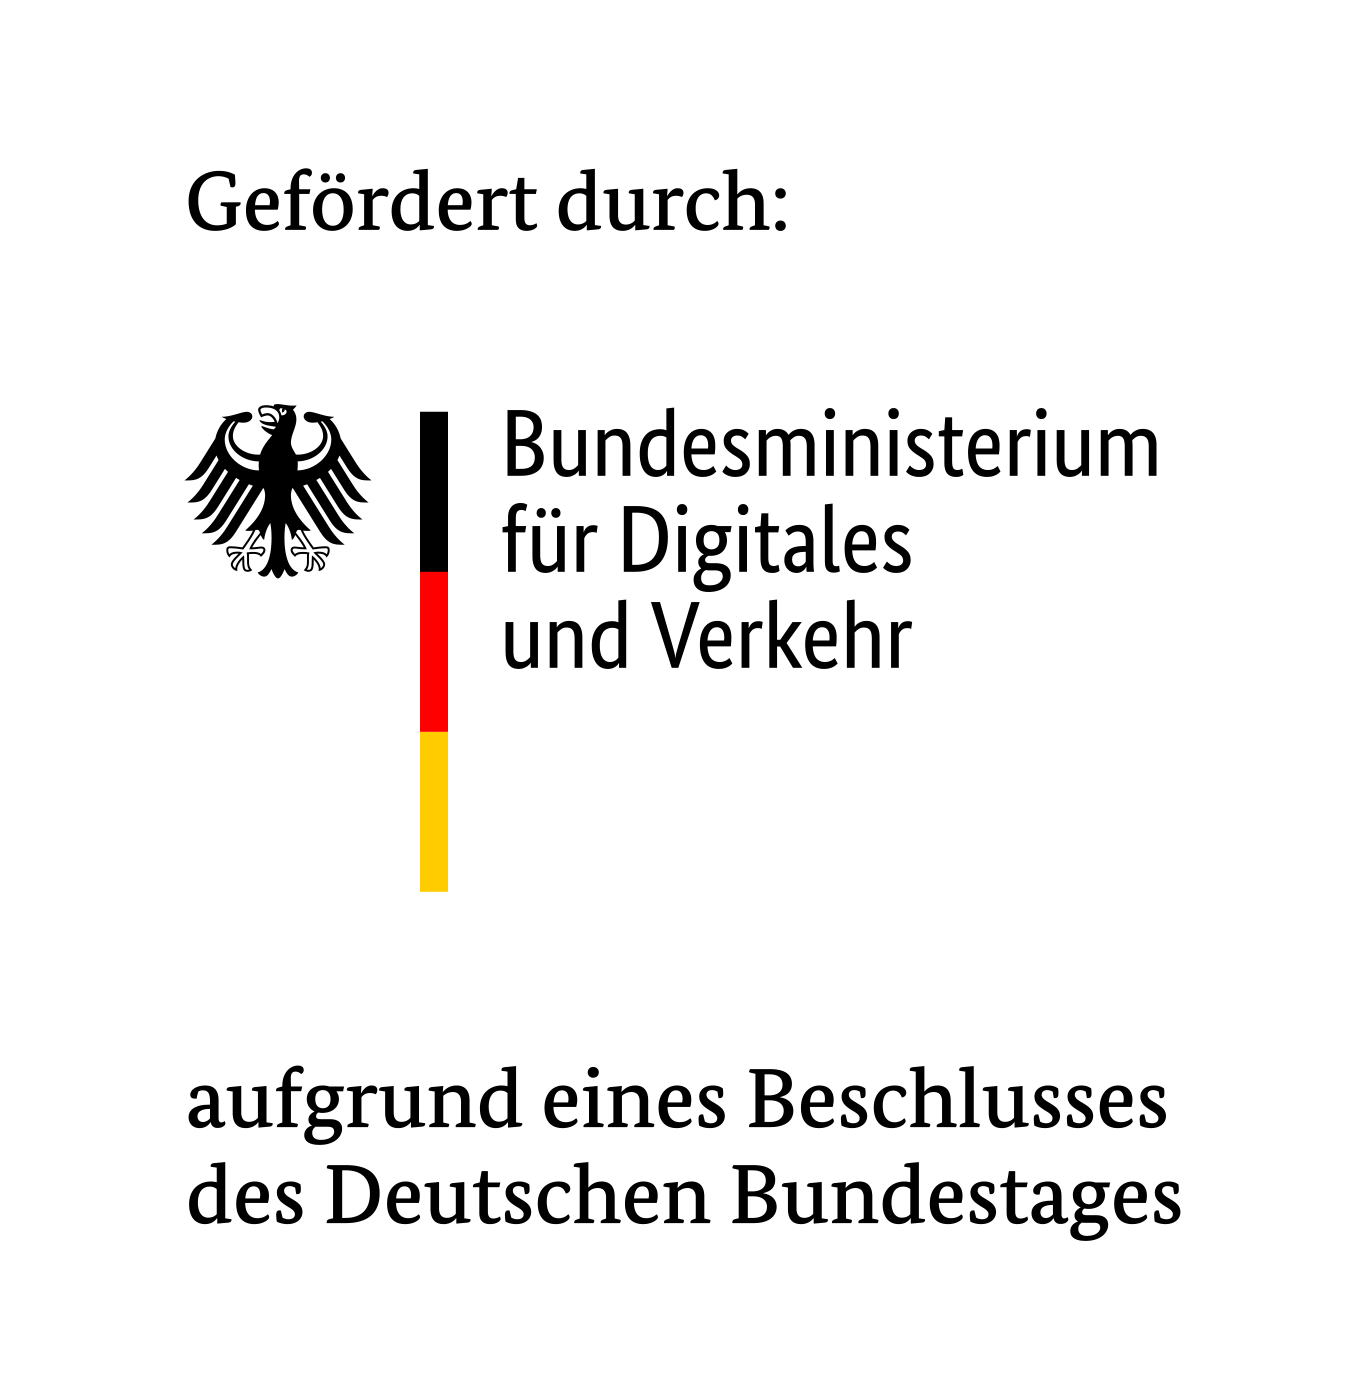 Abbildung des Logos vom Bundesministerium für Digitales und Verkehrs mit dem Zusatz "Gefördert durch:" und "aufgrund eines Beschlusses des Deutschen Bundestages".